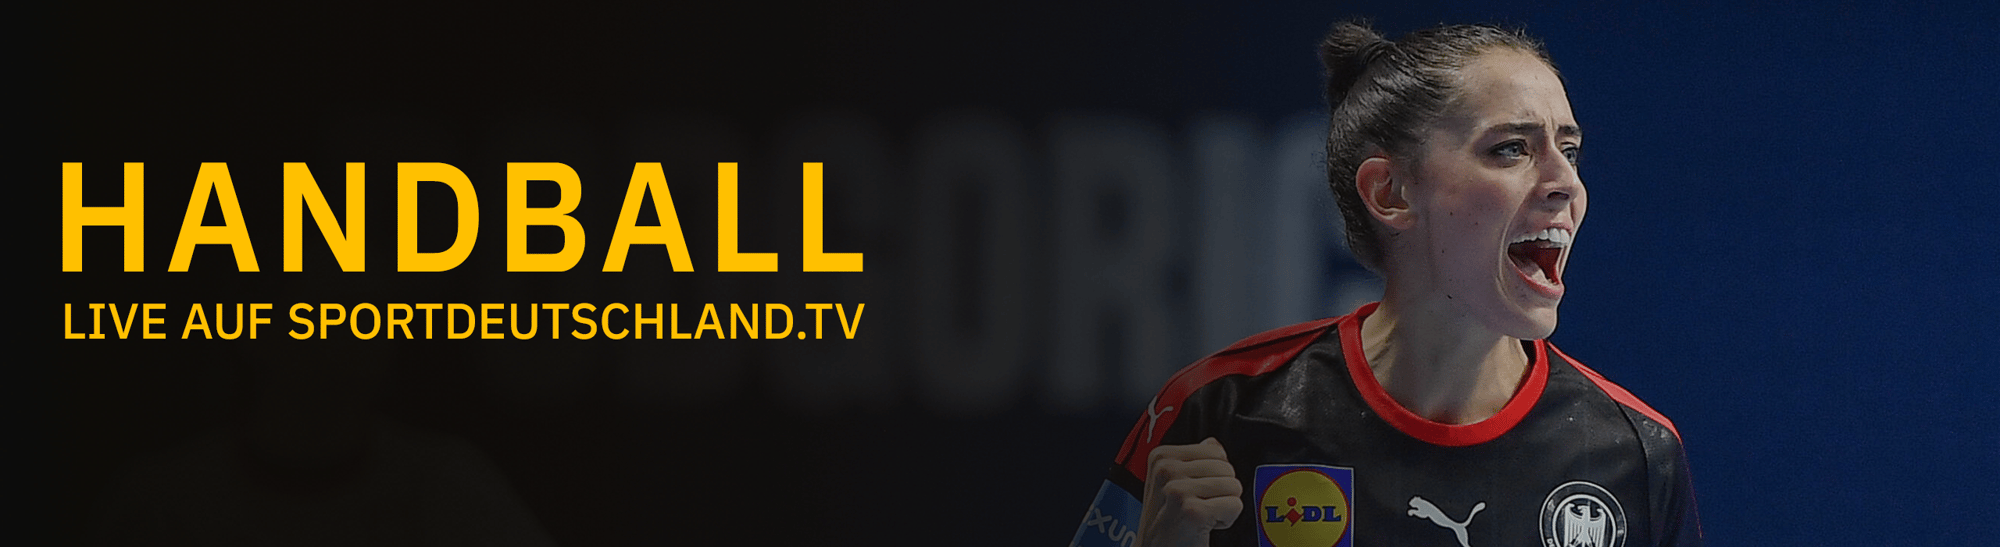 Handball LIVE auf Sportdeutschland.TV